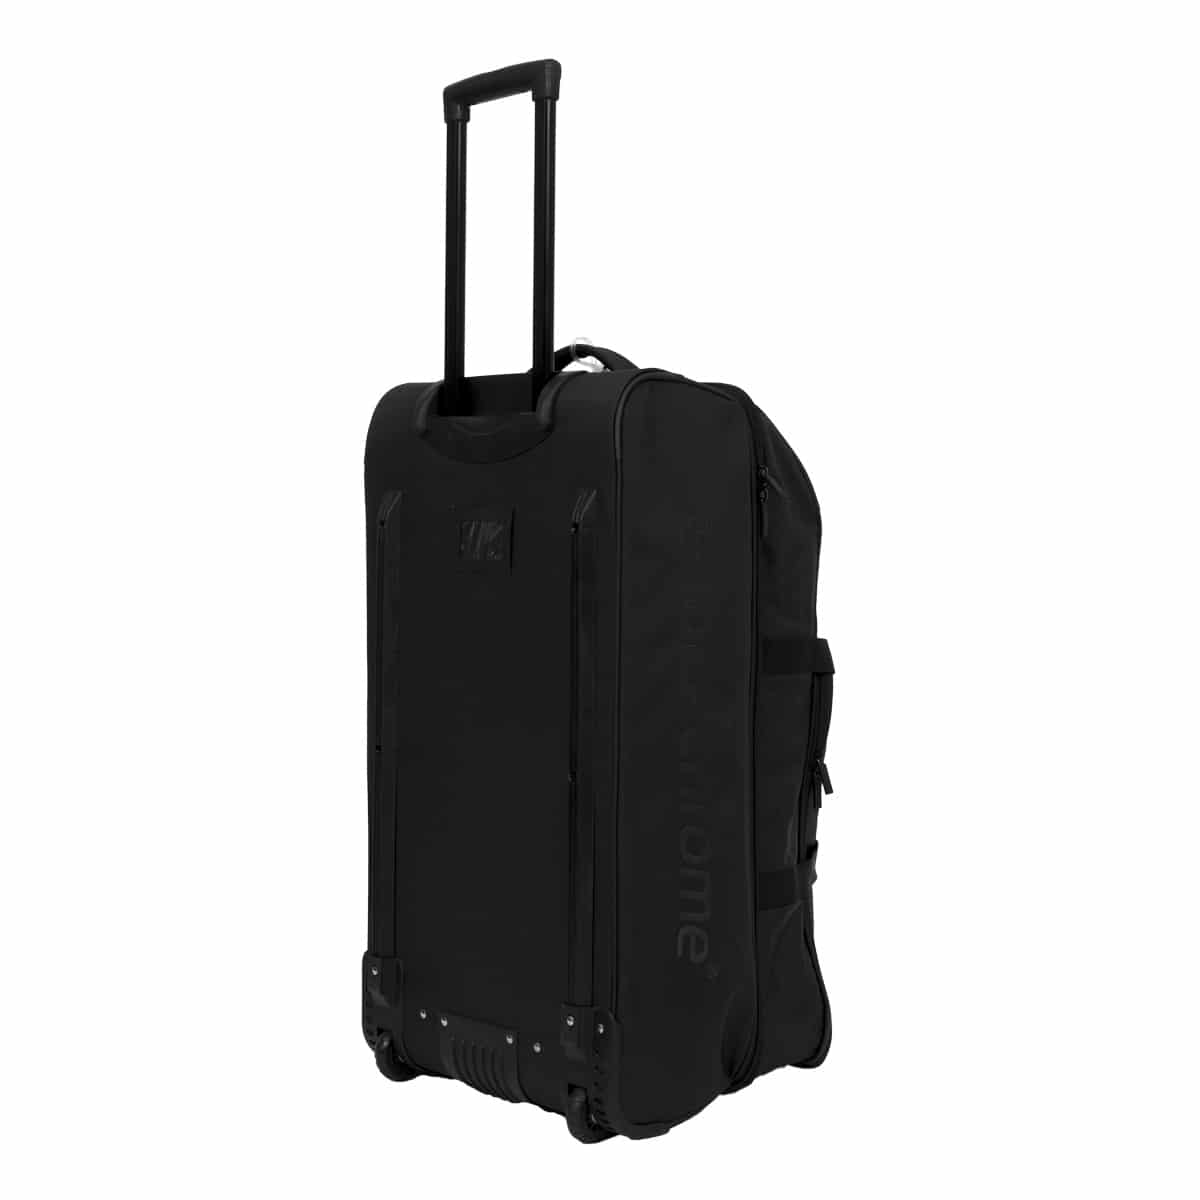 Buy Now - Elite Travel Bag - Black - Blackchrome